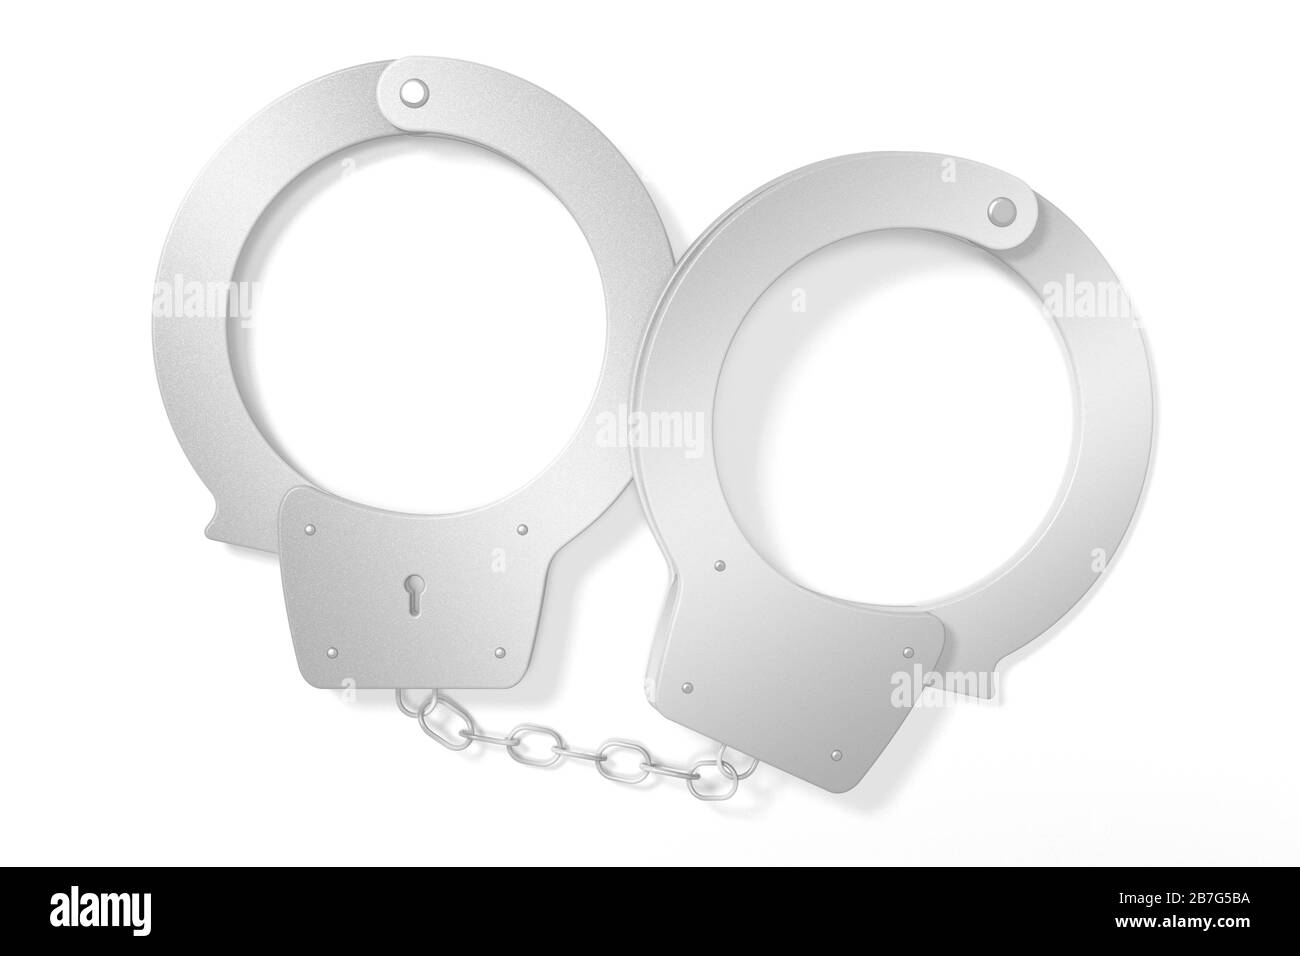 Legge 3D, concetto di crimine - manette isolate su sfondo bianco Foto Stock